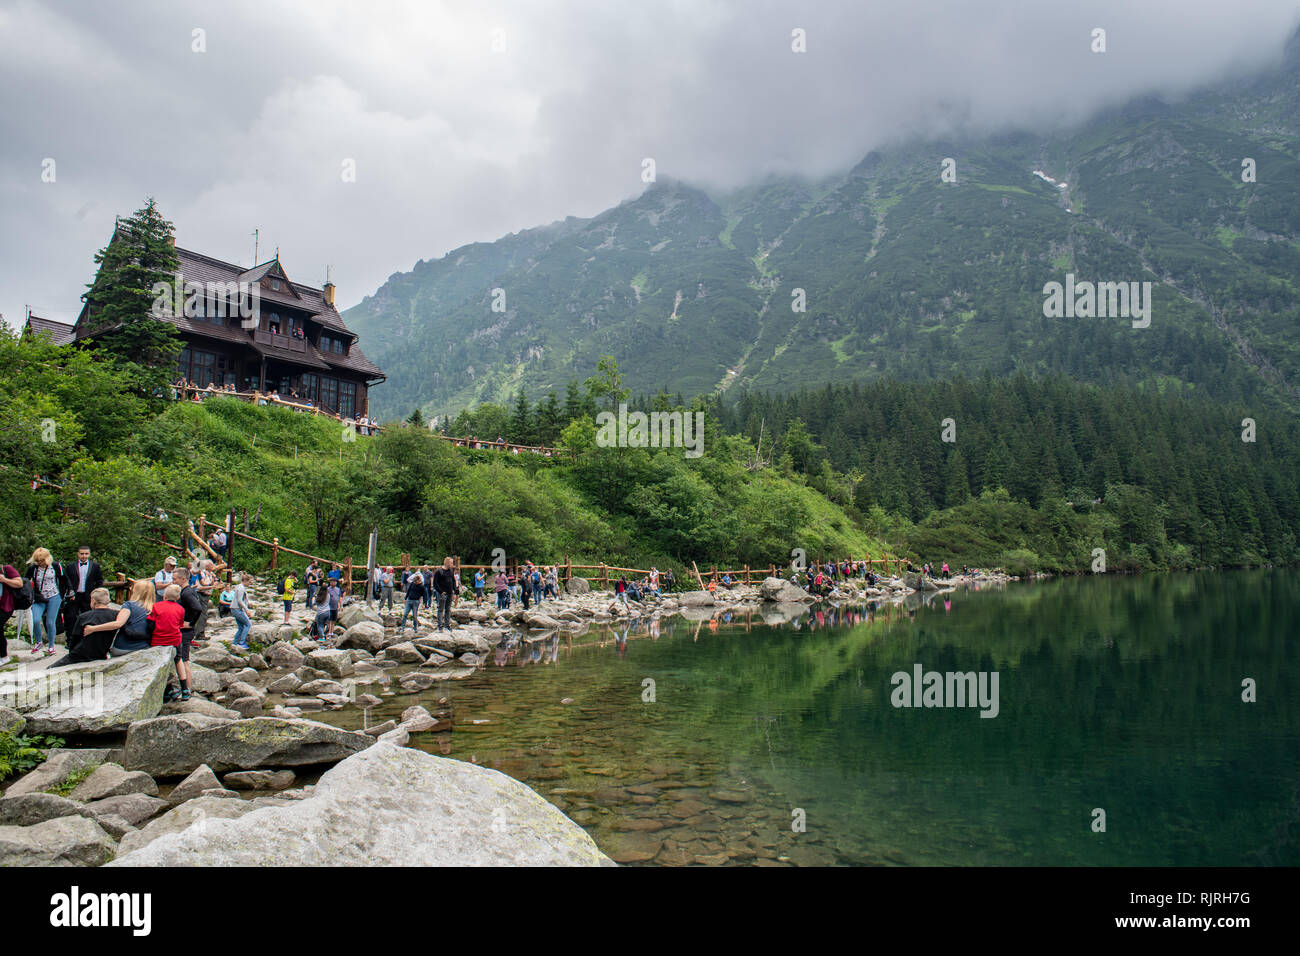 Les touristes s'asseoir sur la rive rocheuse du lac Morskie Oko (oeil de la mer) dans les montagnes Tatra dans le Parc National des Tatras,lesser Poland Voivodeship, Polan Banque D'Images